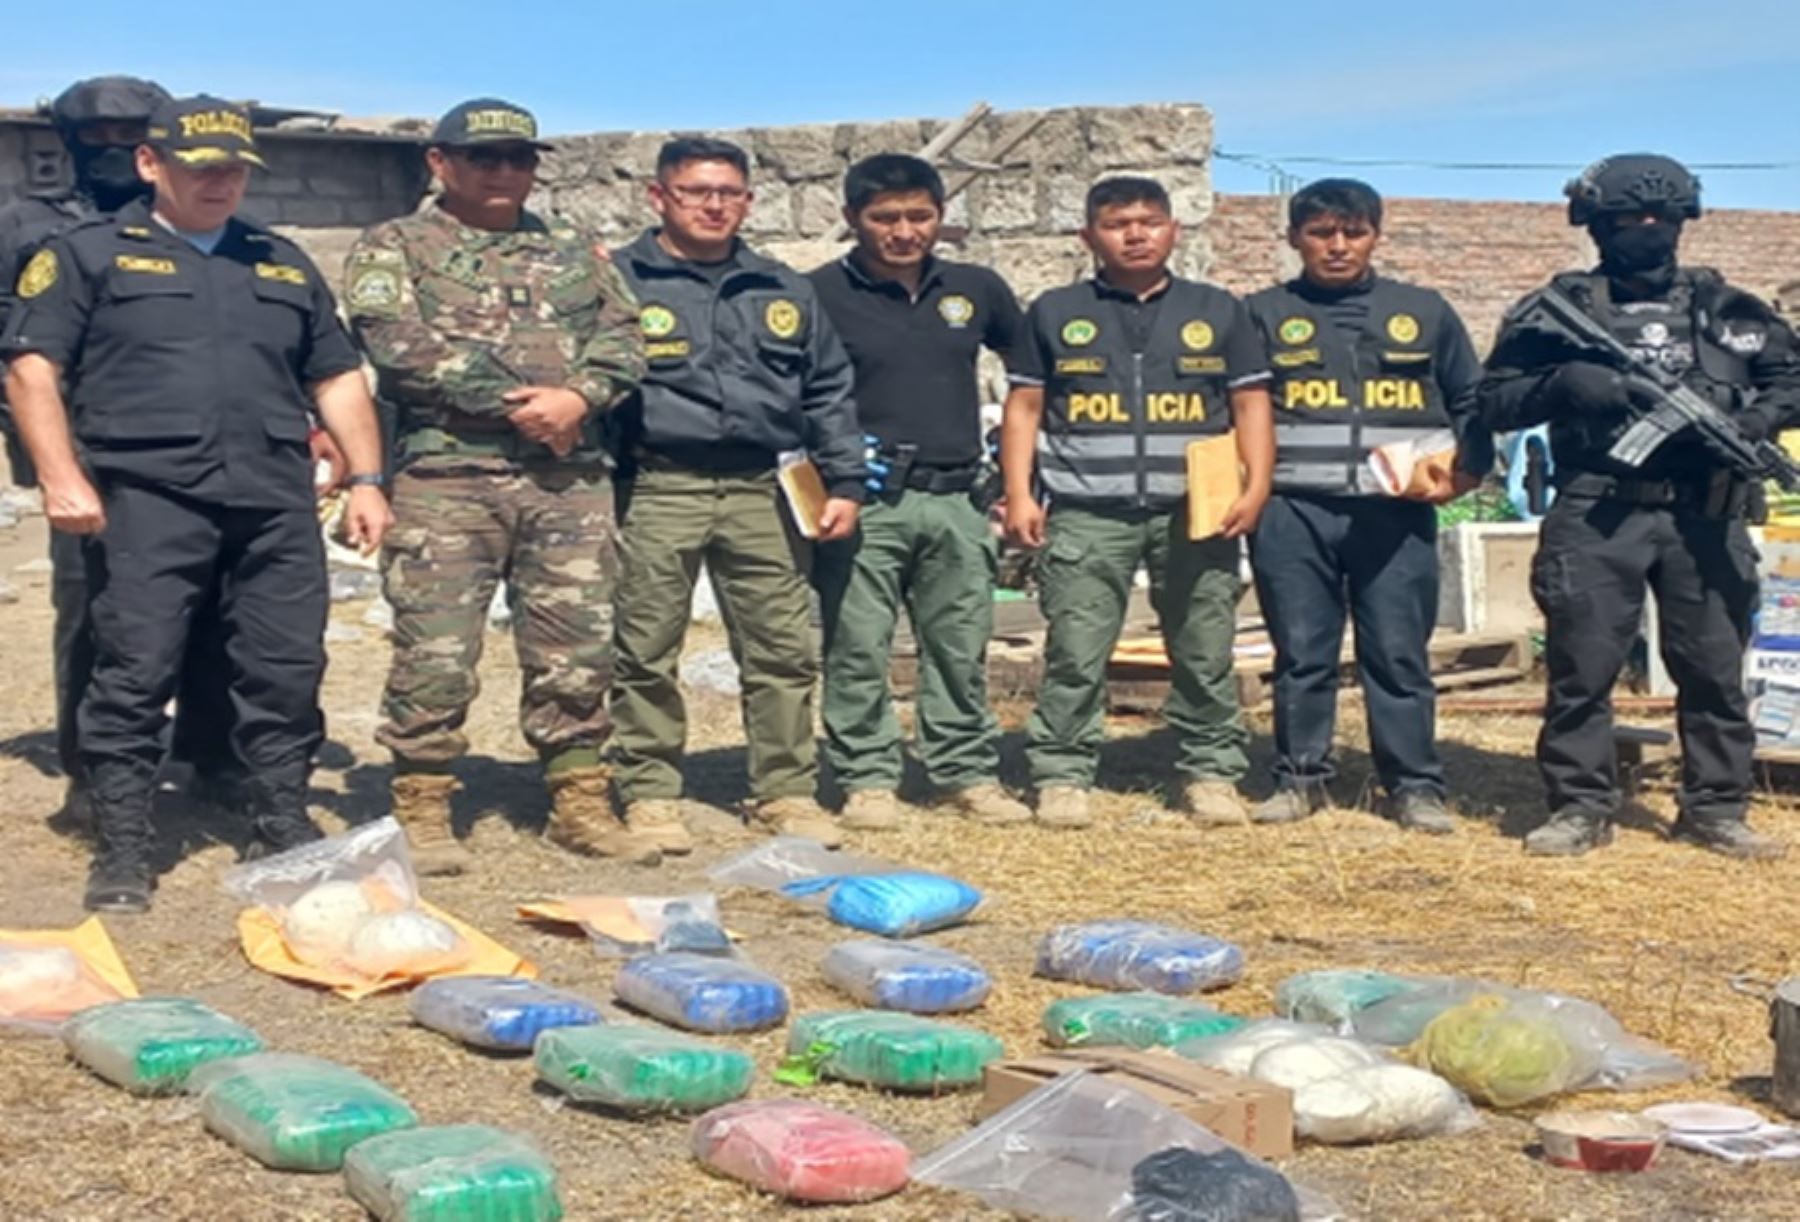 Red de narcotráfico desmantelada por PNP en Arequipa, Huánuco y Lima